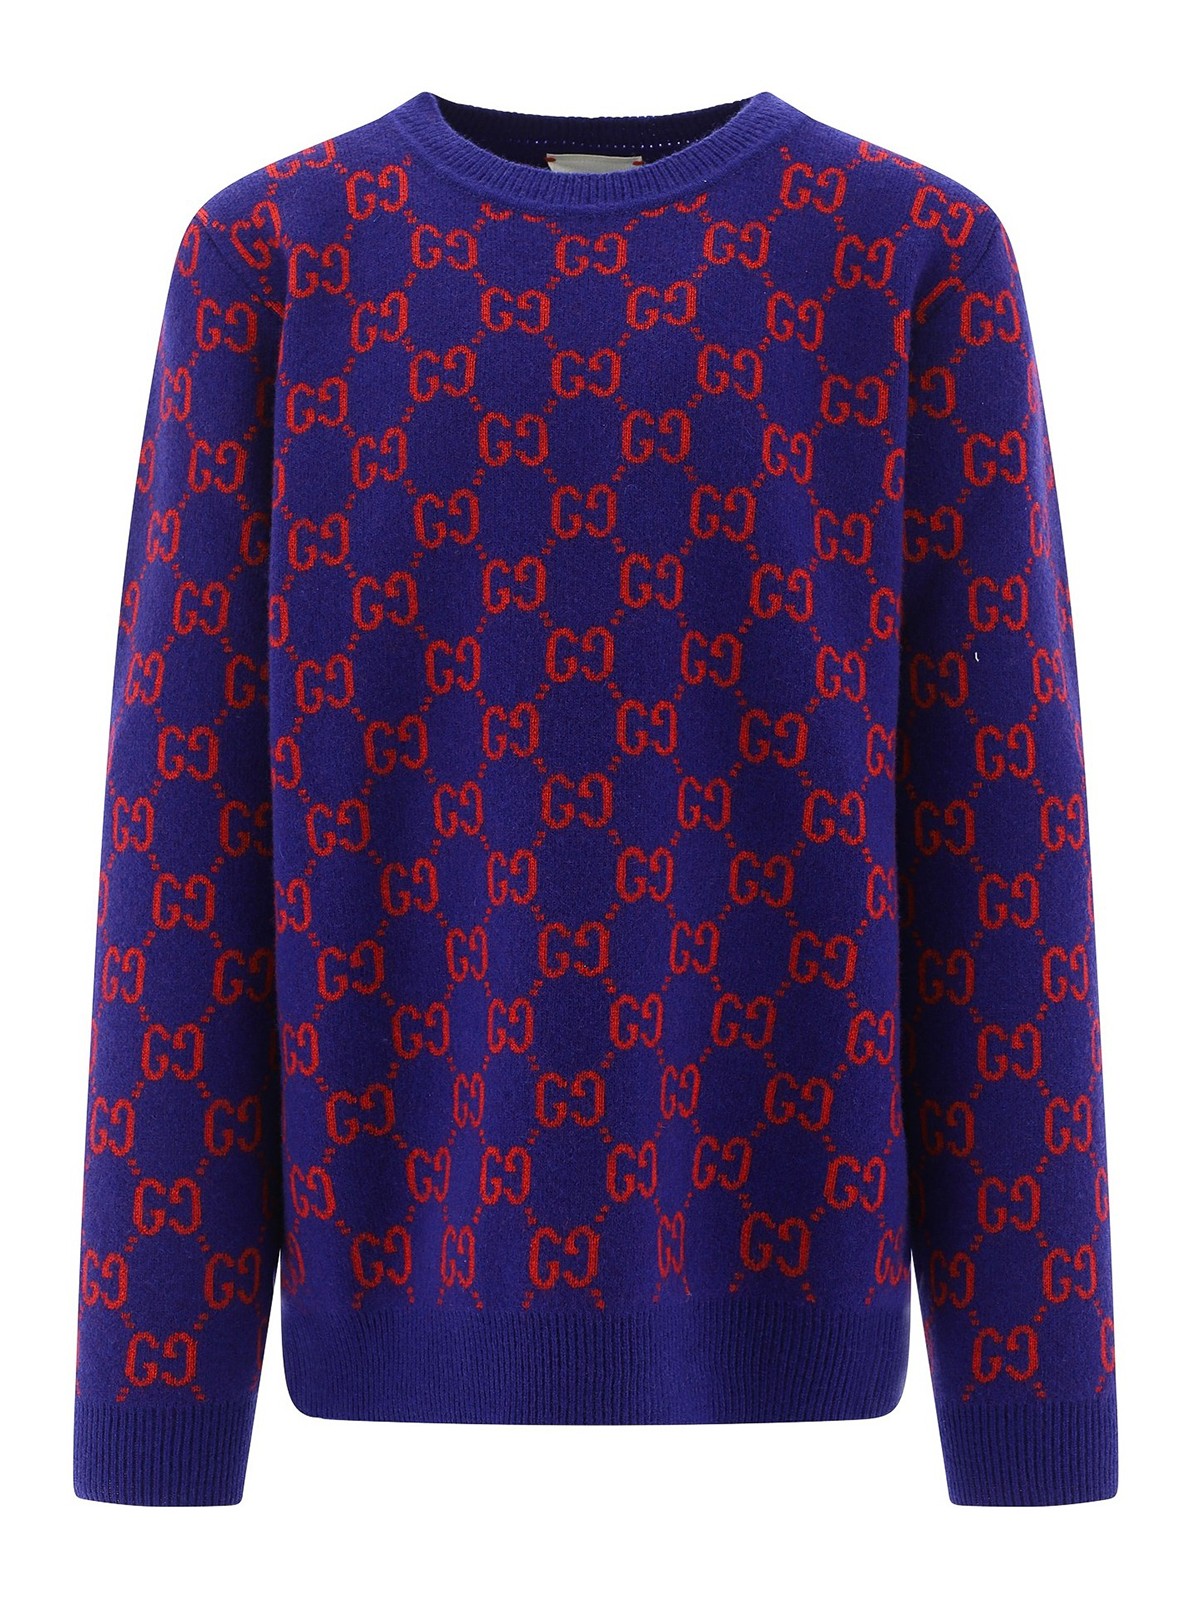 Gucci - GG Supreme sweater - یقه گرد 